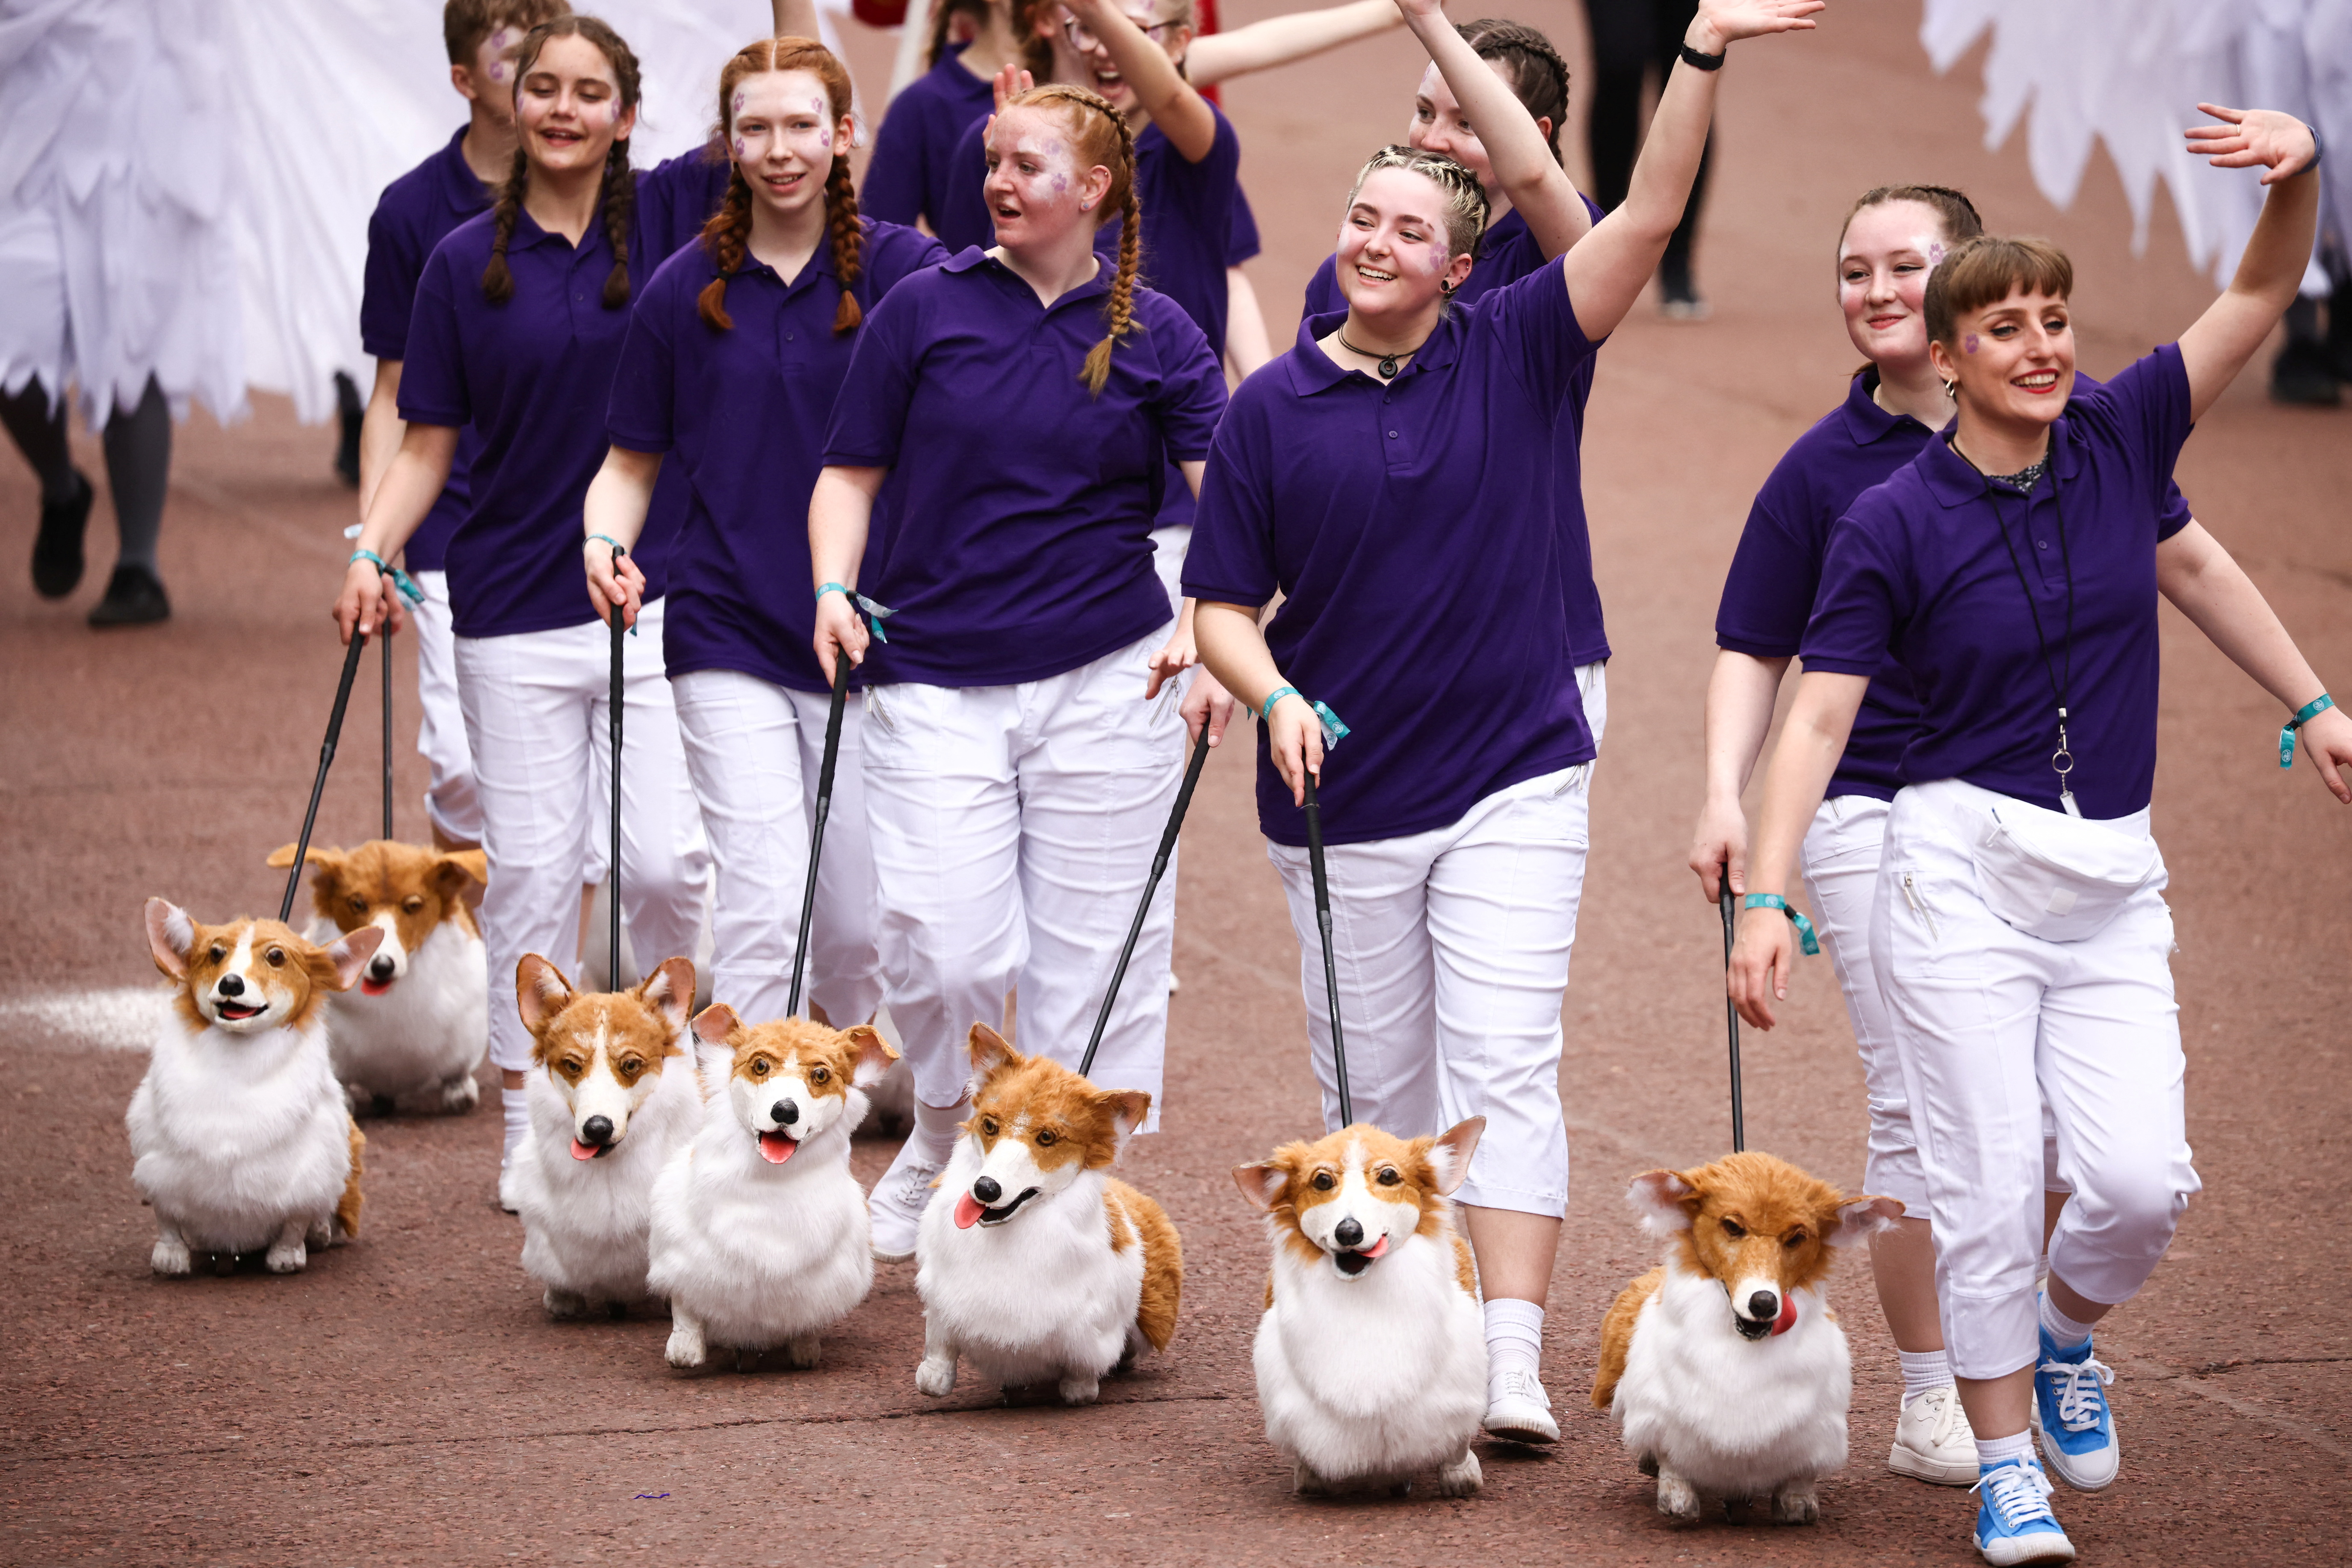 Personas con lujosos perros Corgi participan en un desfile durante el Concurso del Jubileo de Platino, que marca el final de las celebraciones del Jubileo de Platino de la Reina Isabel de Gran Bretaña, en Londres, Gran Bretaña, el 5 de junio de 2022. REUTERS/Henry Nicholls
